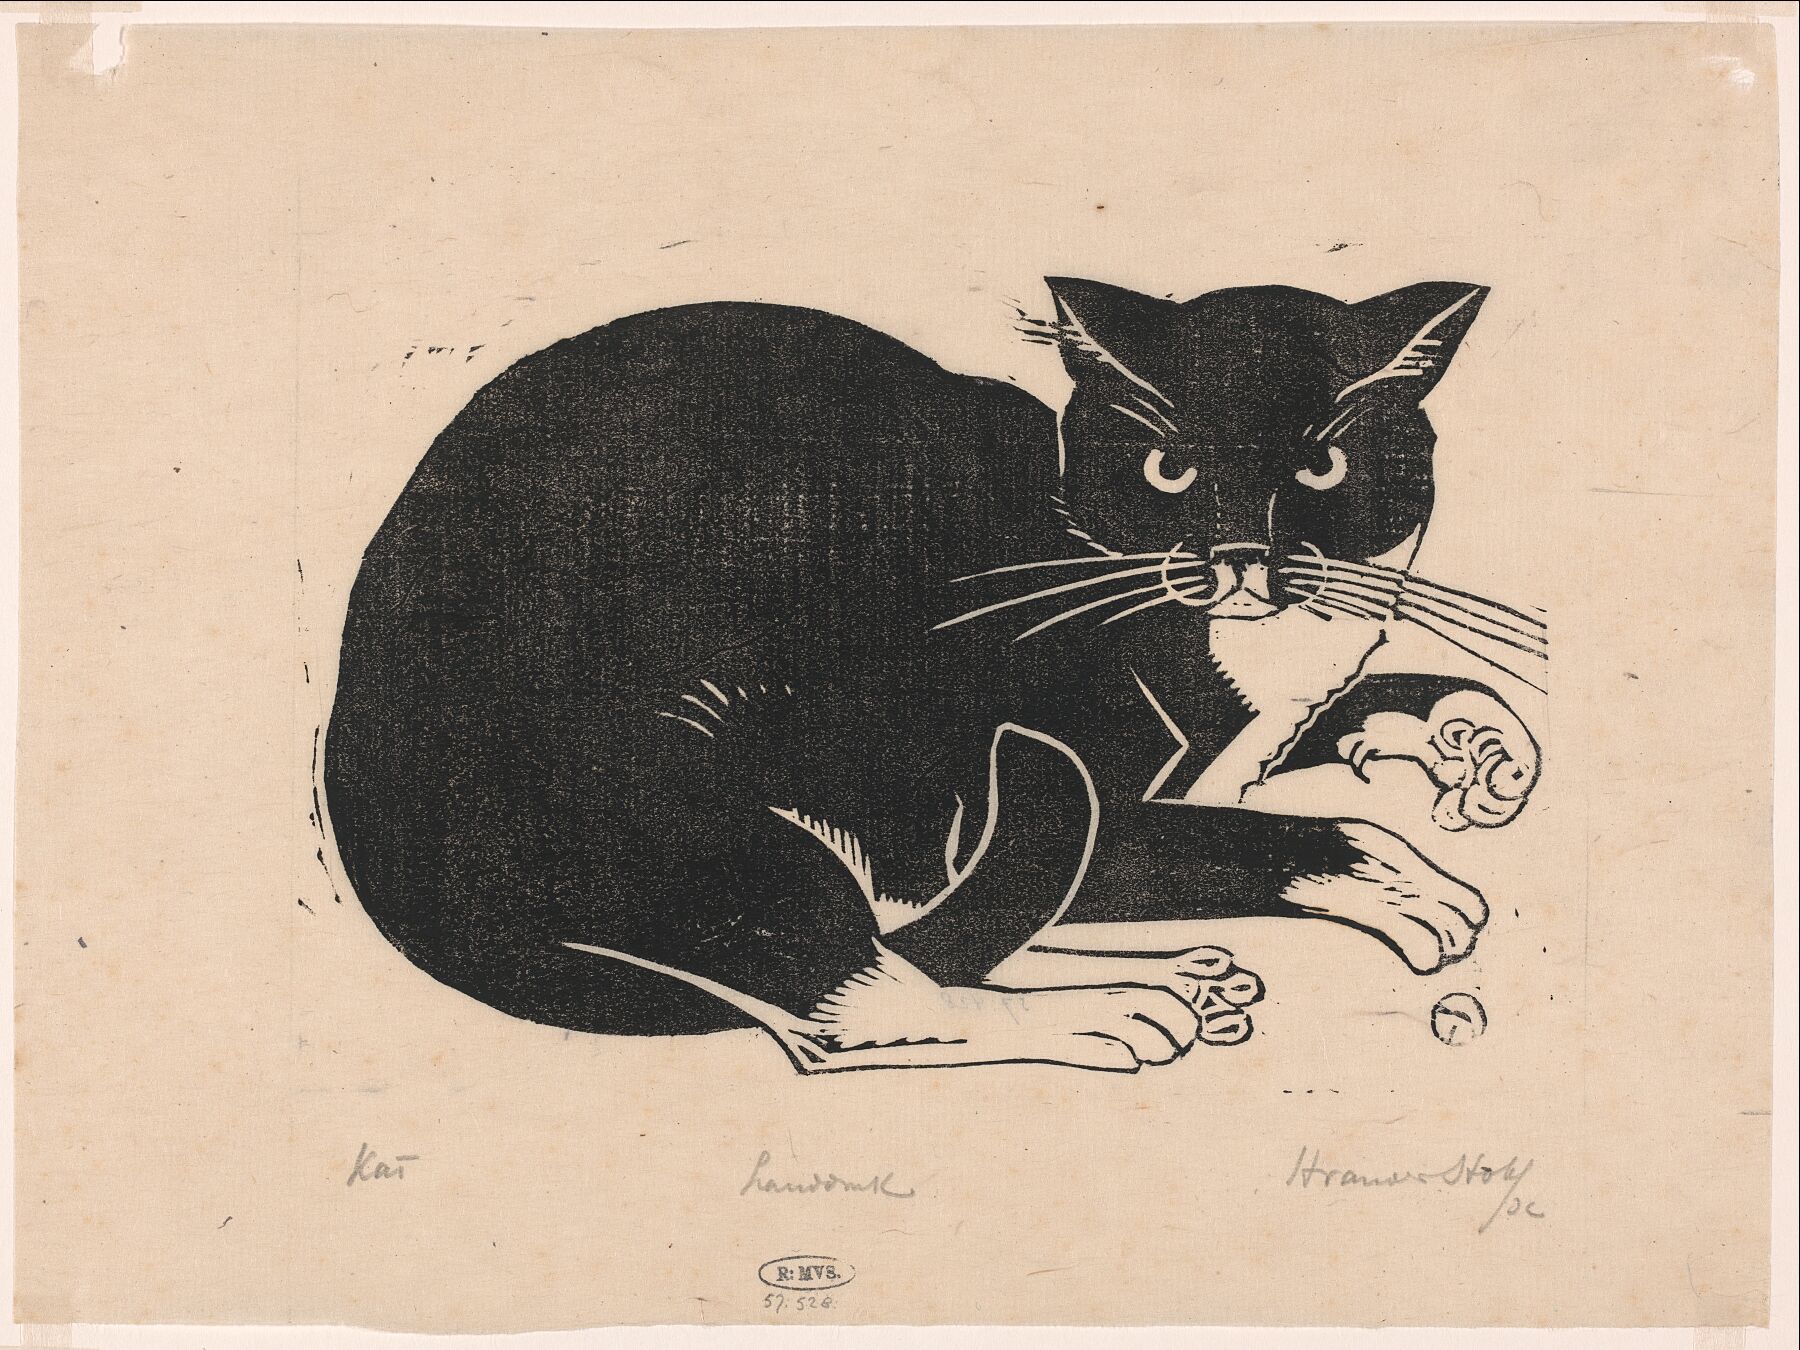 Cat by Henri van der Stok - 1880 - 1946